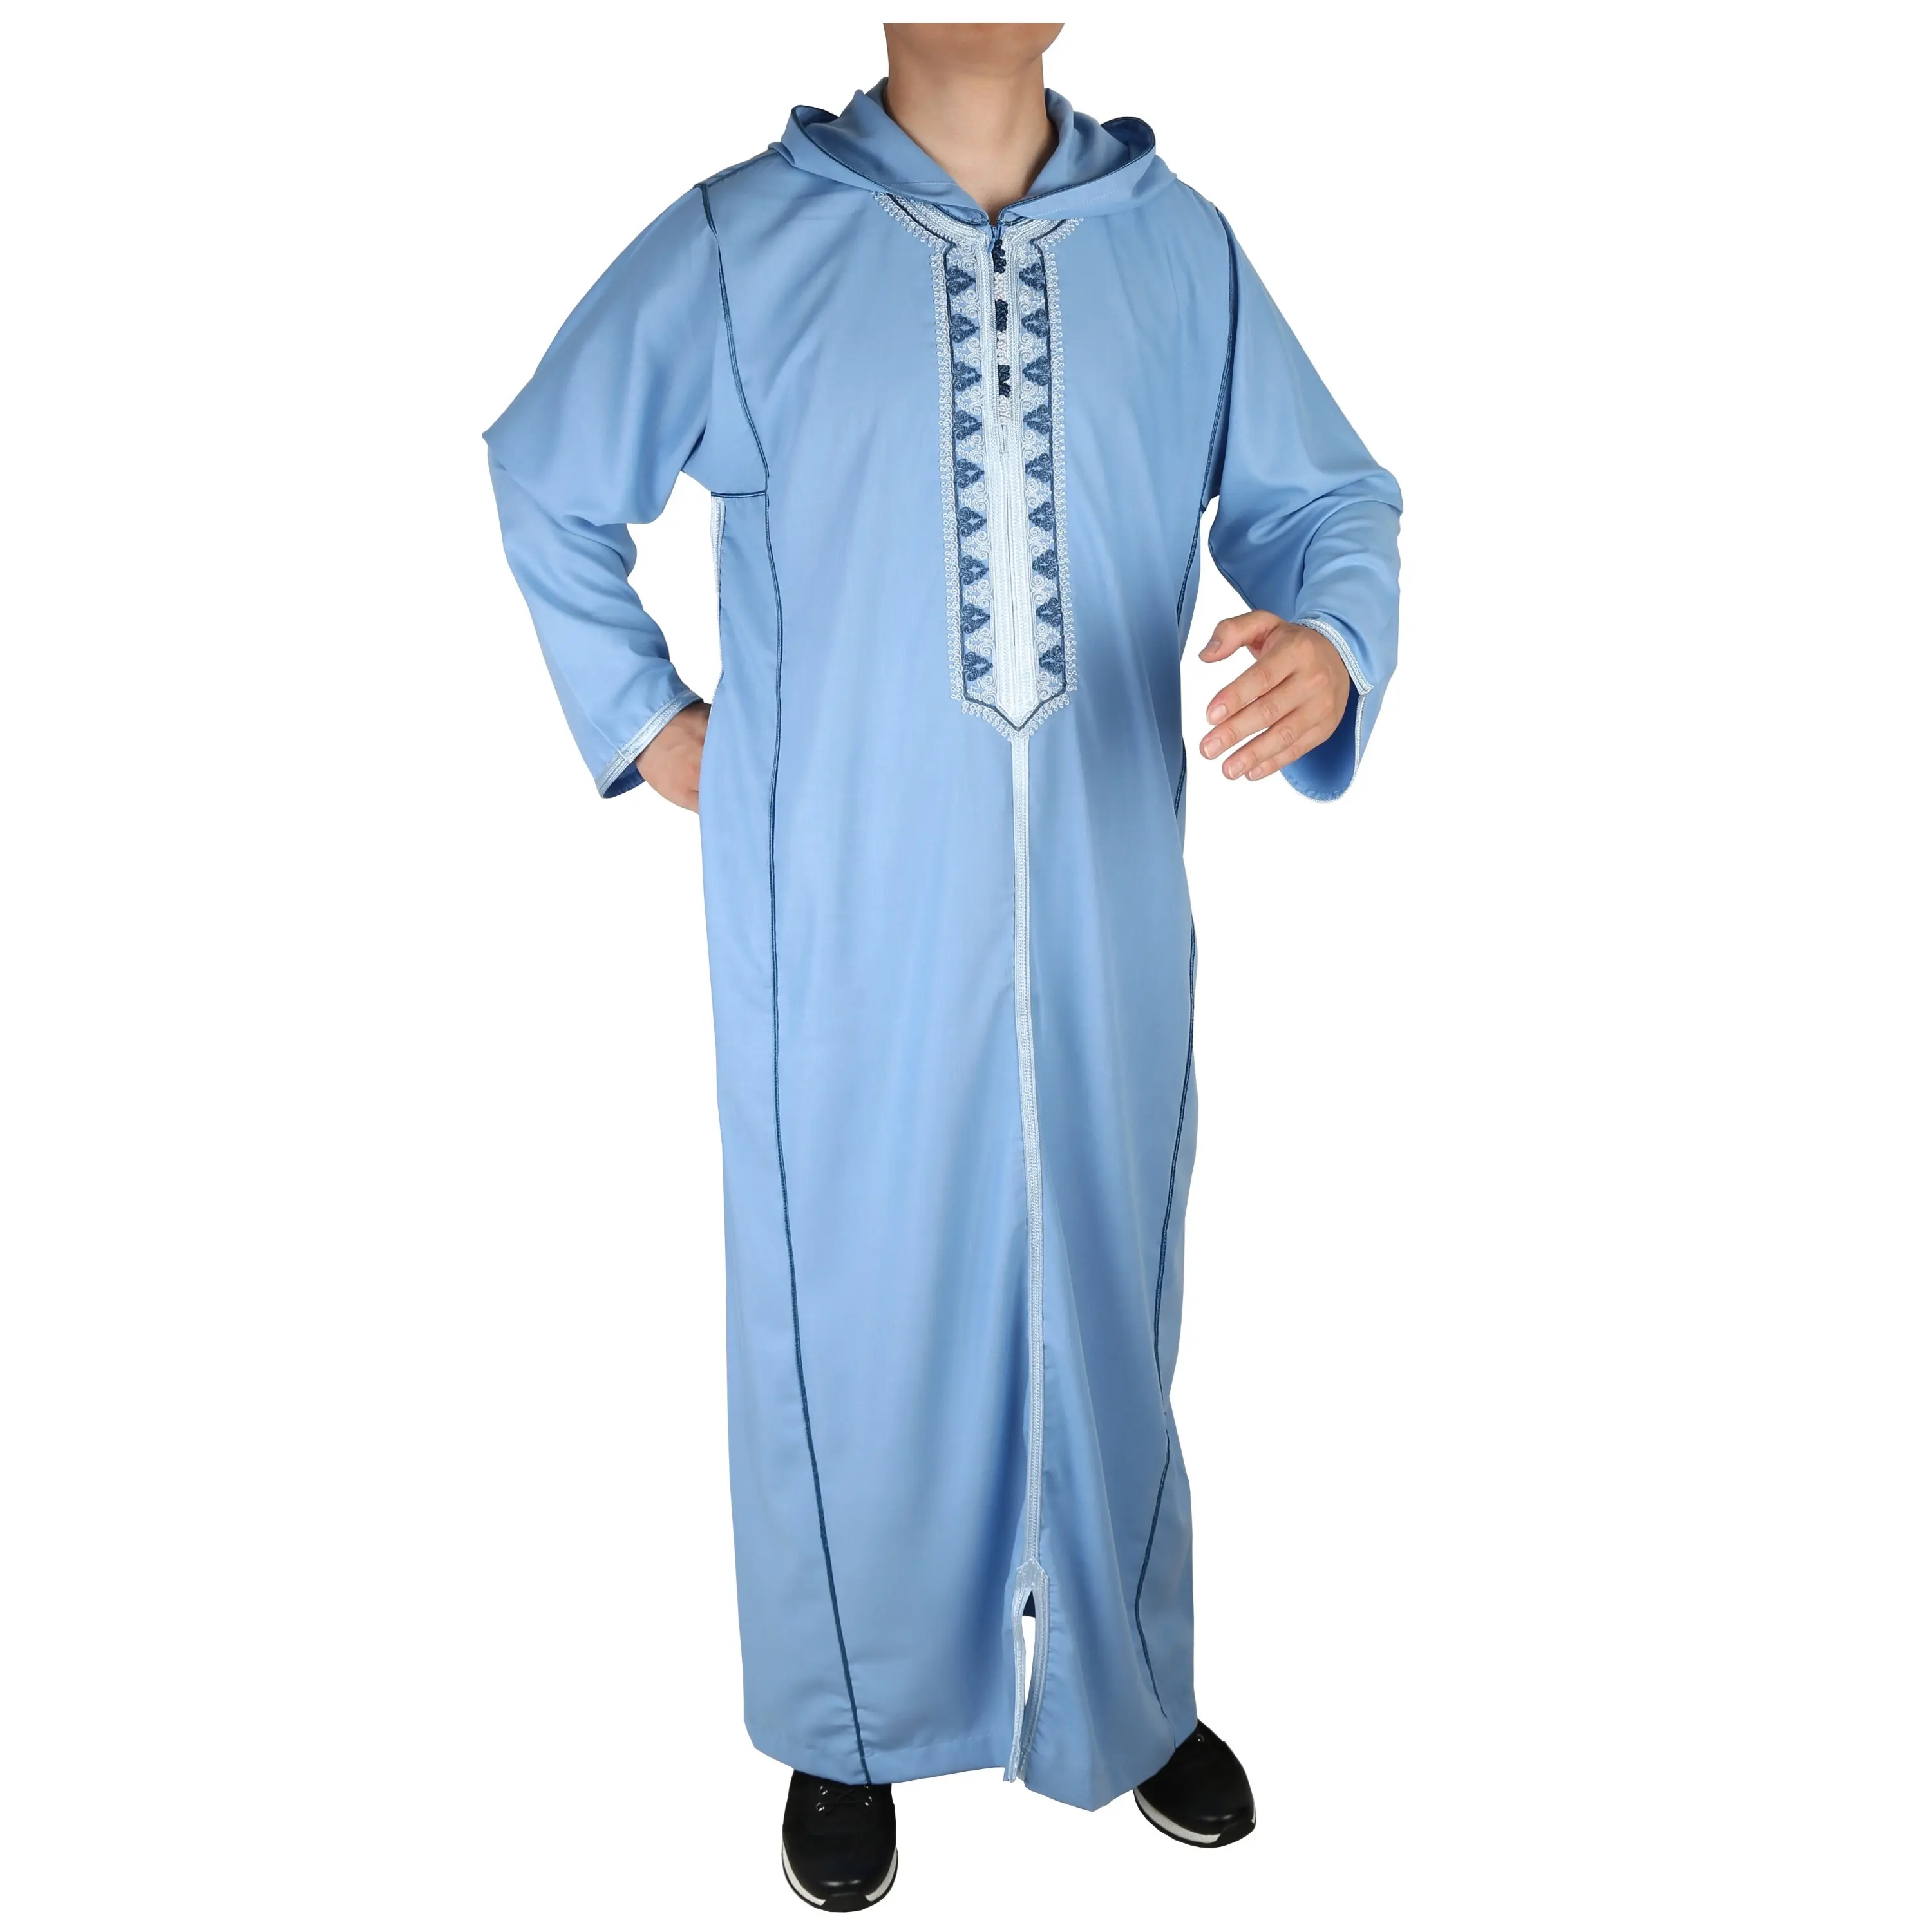 Ikaf-sombreros bordados de estilo marroquí para hombre musulmán, vestido de manga larga, caftán Djellaba Jubbah, ropa islámica para regalo de Ramadán Eid